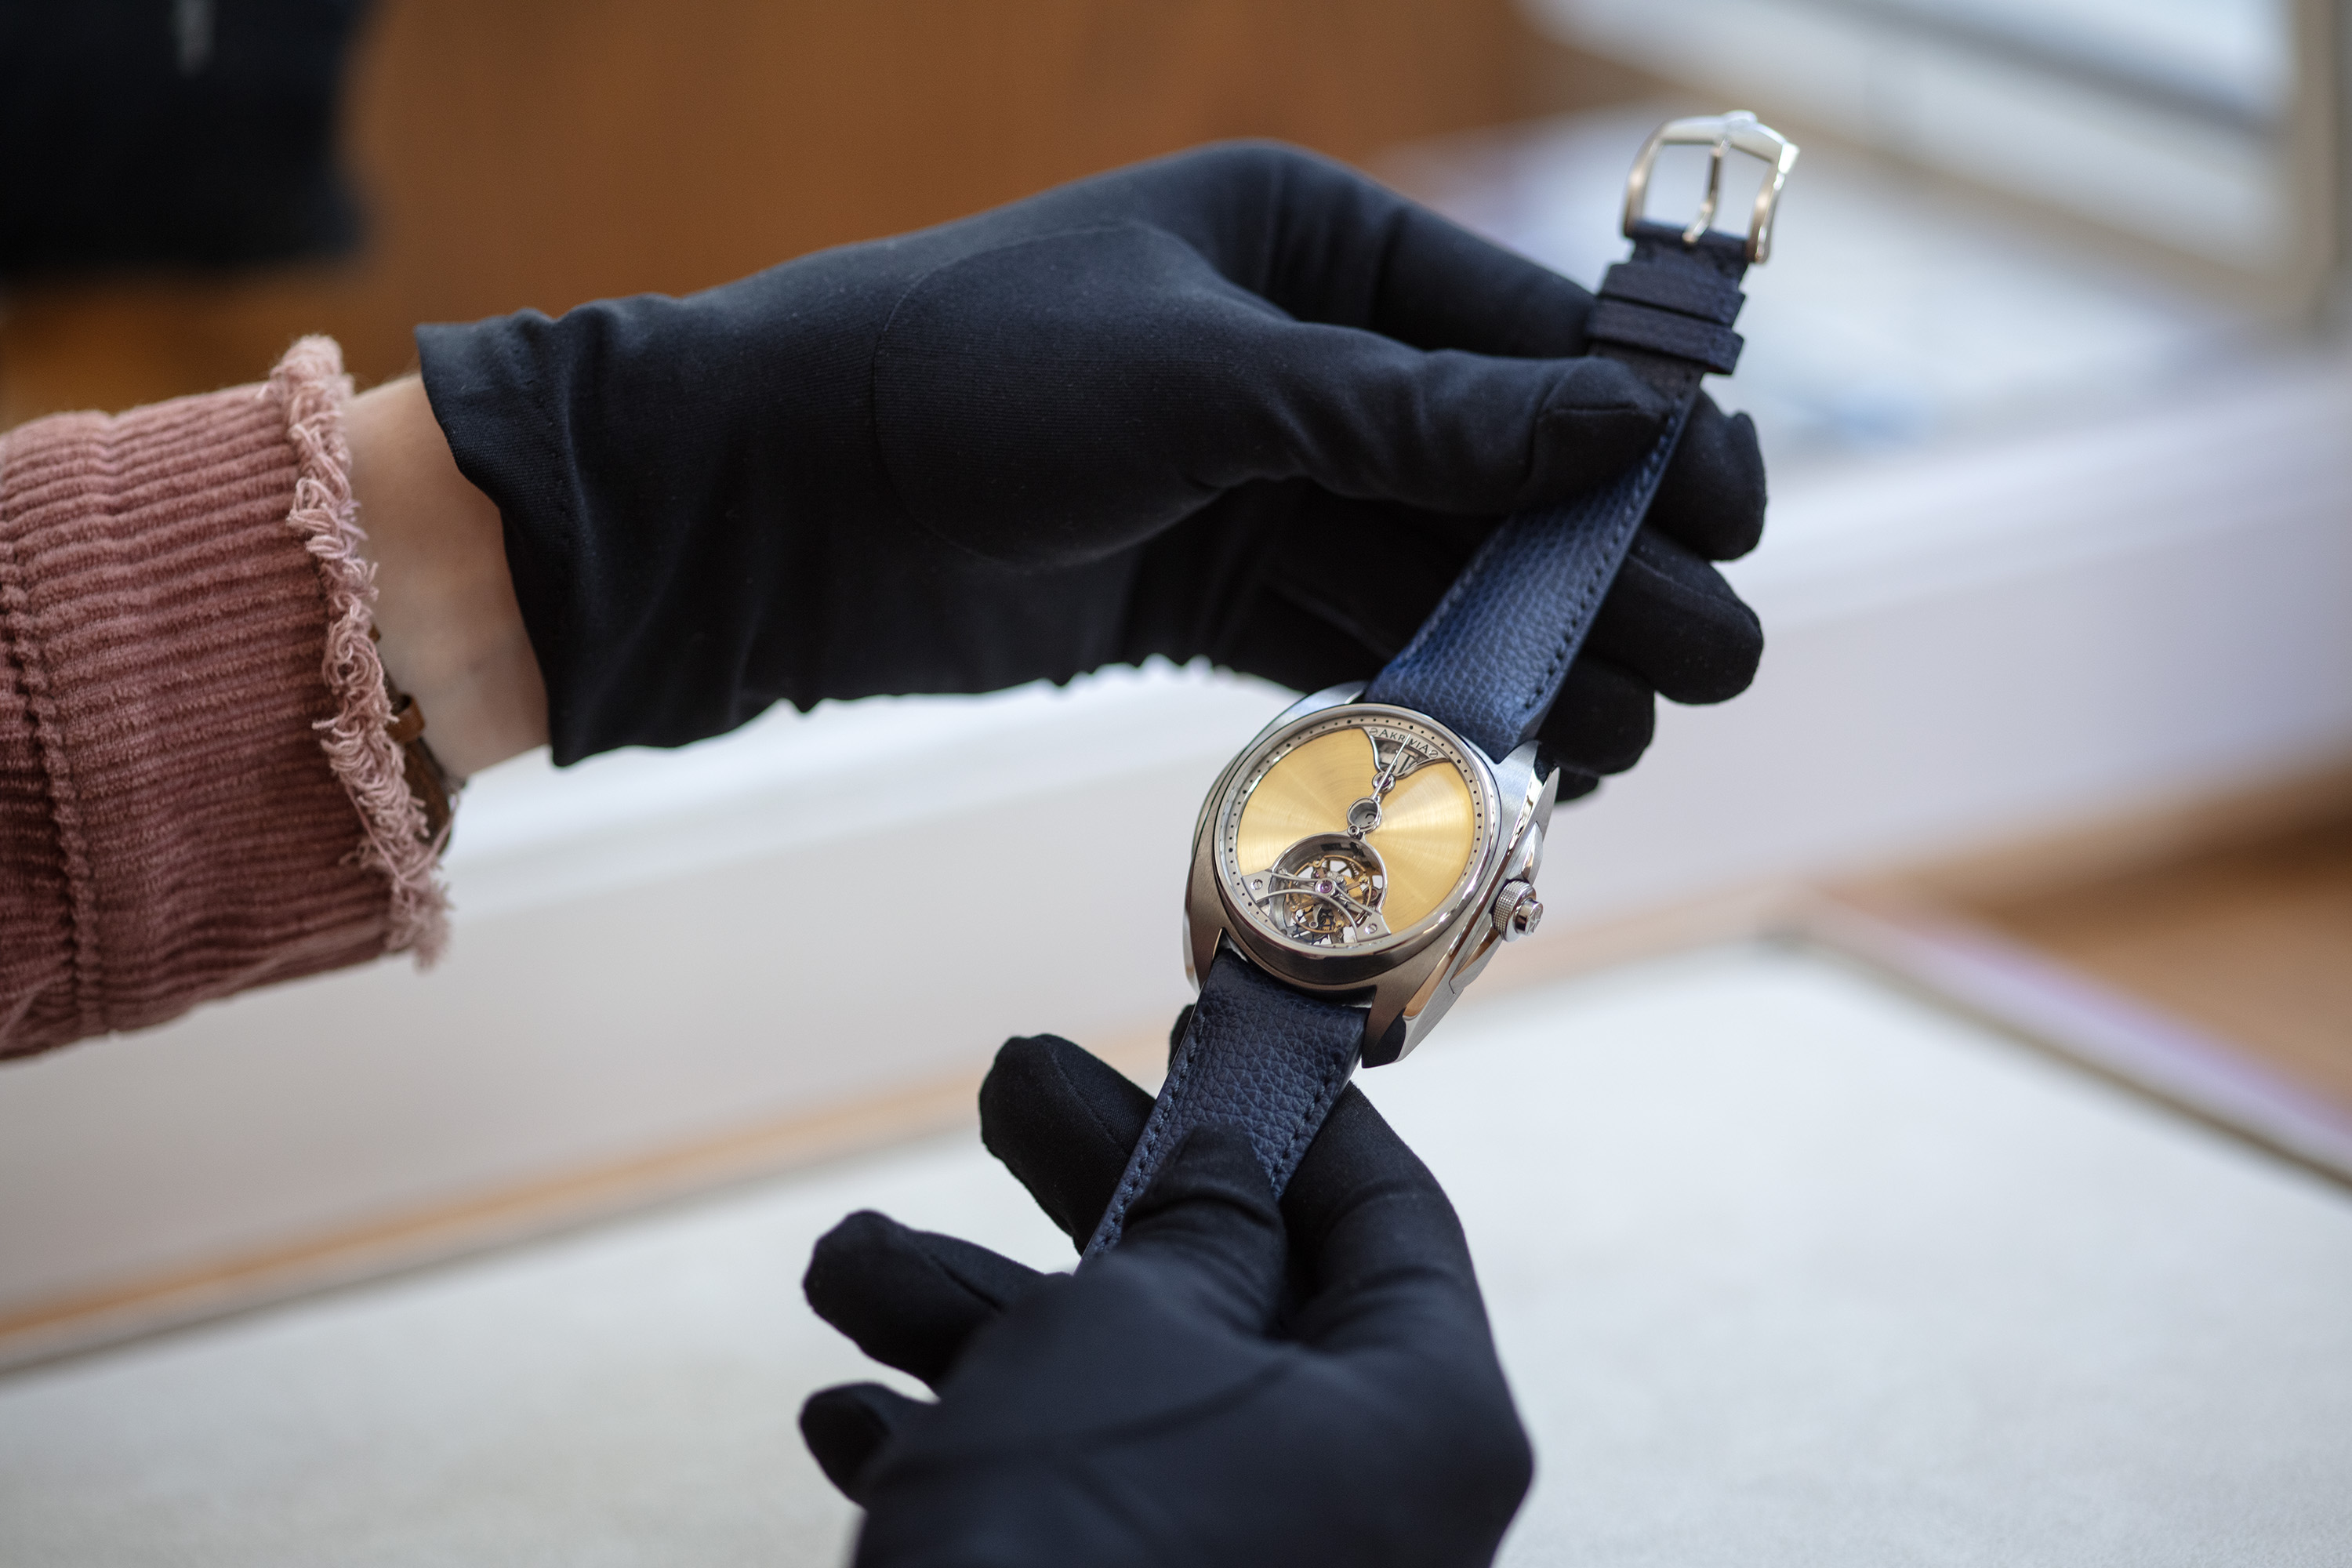 2018年，Rexhep Rexhepi制作的首款“当代天文台表”(Chronomètre contemporain)荣获日内瓦制表大奖赛男士腕表奖。